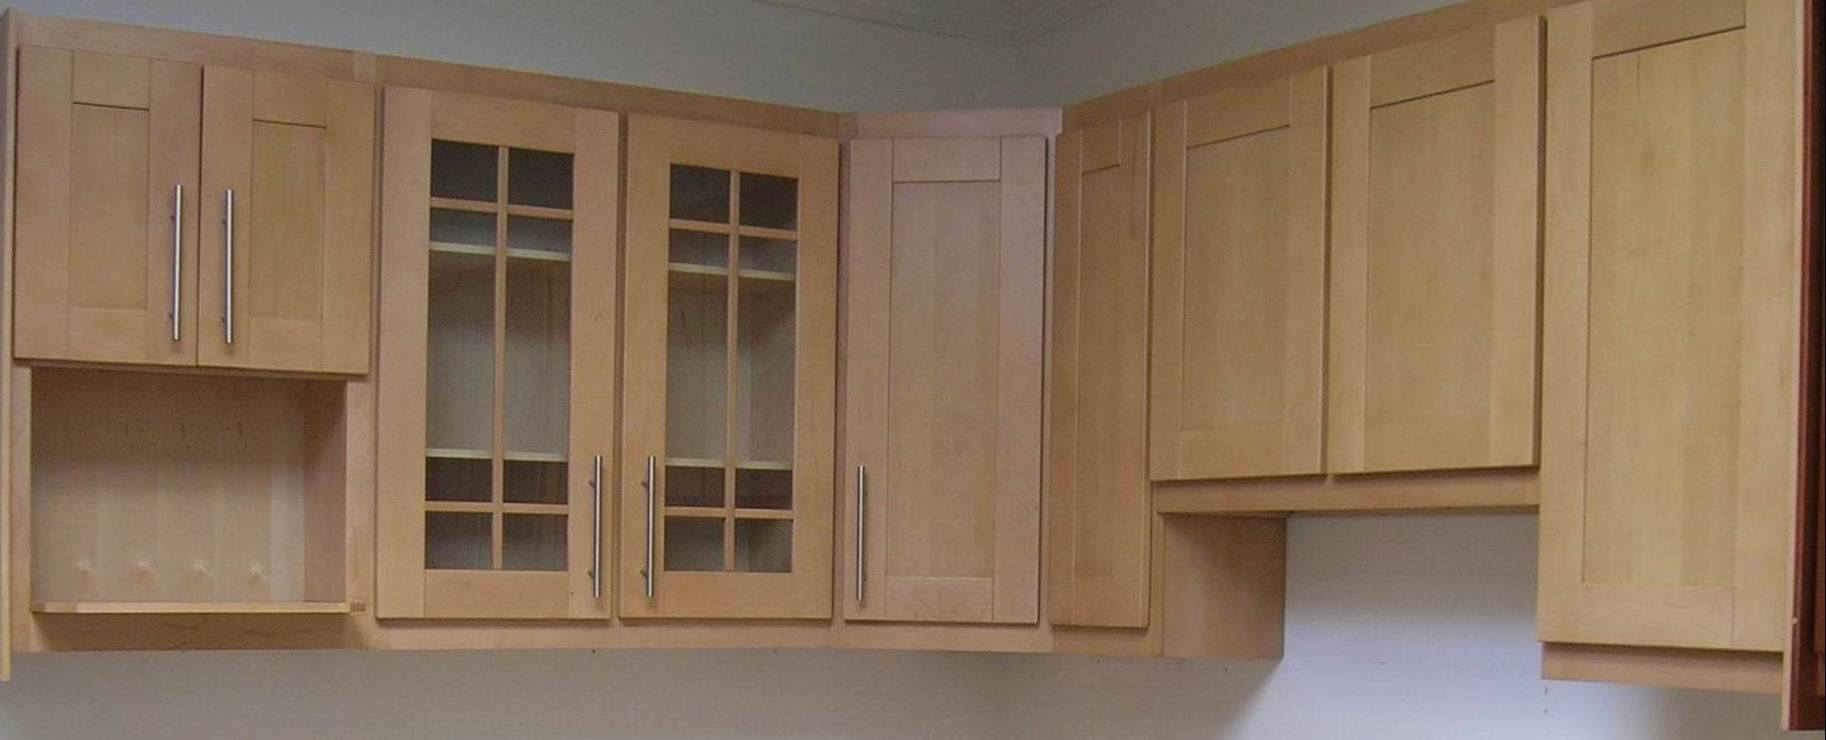 American Standard Kitchen Cabinet